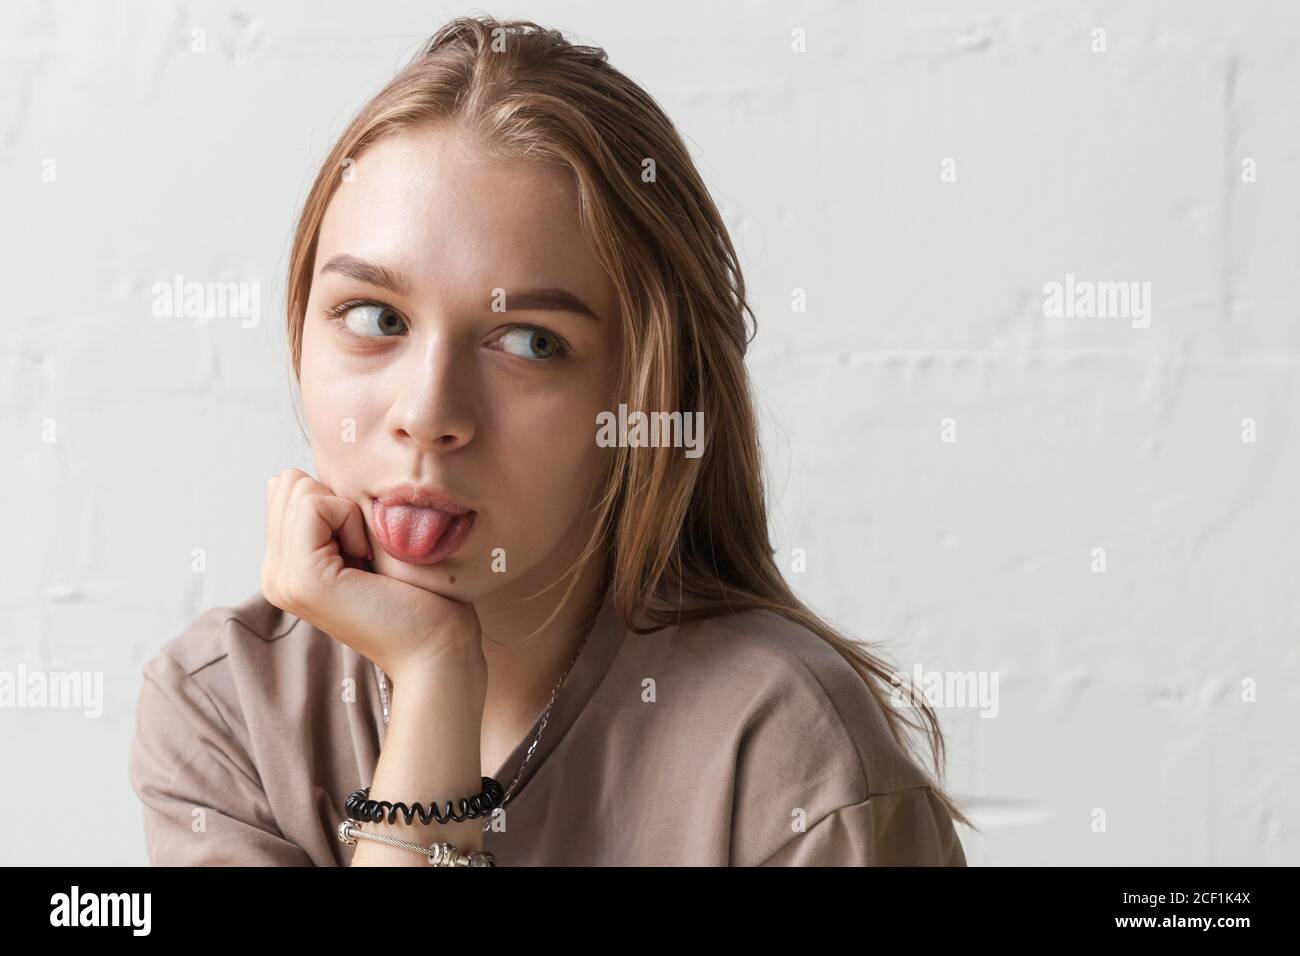 Divertente ragazza bionda teenage mostra lingua, primo piano studio ritratto con luce naturale su parete bianca Foto Stock